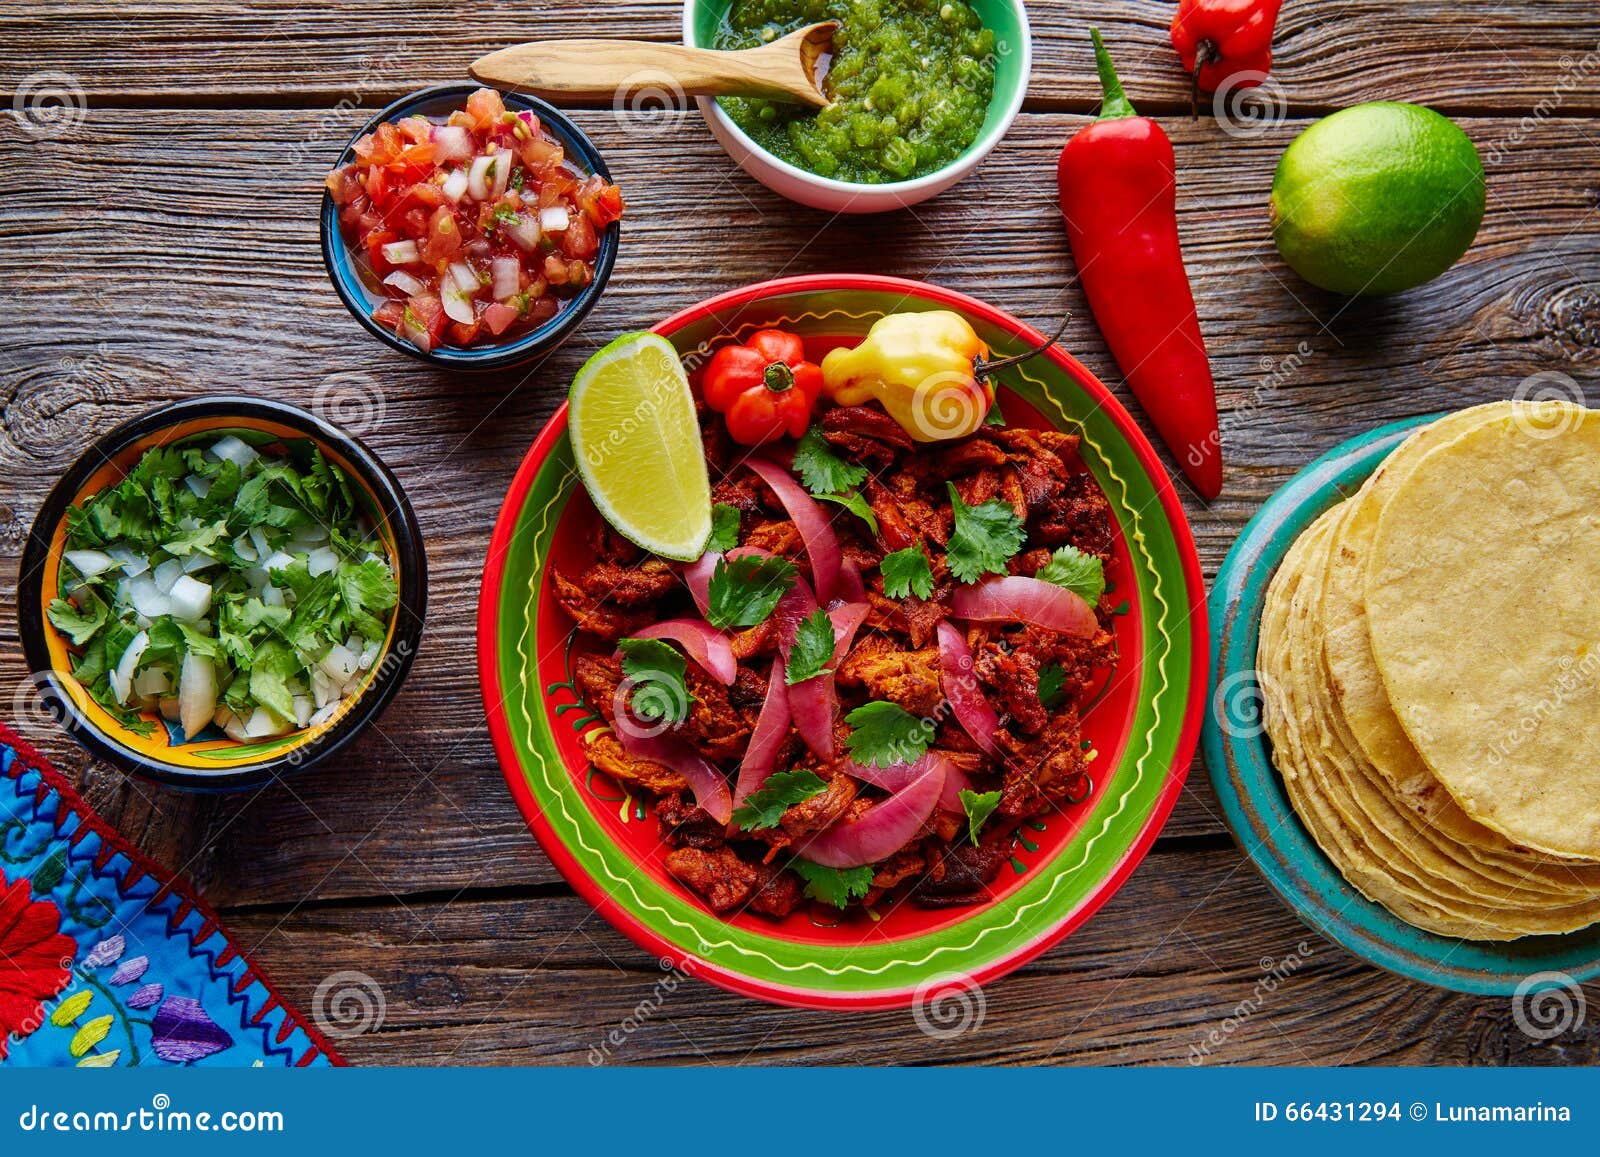 cochinita pibil mexican platillo food with red onion